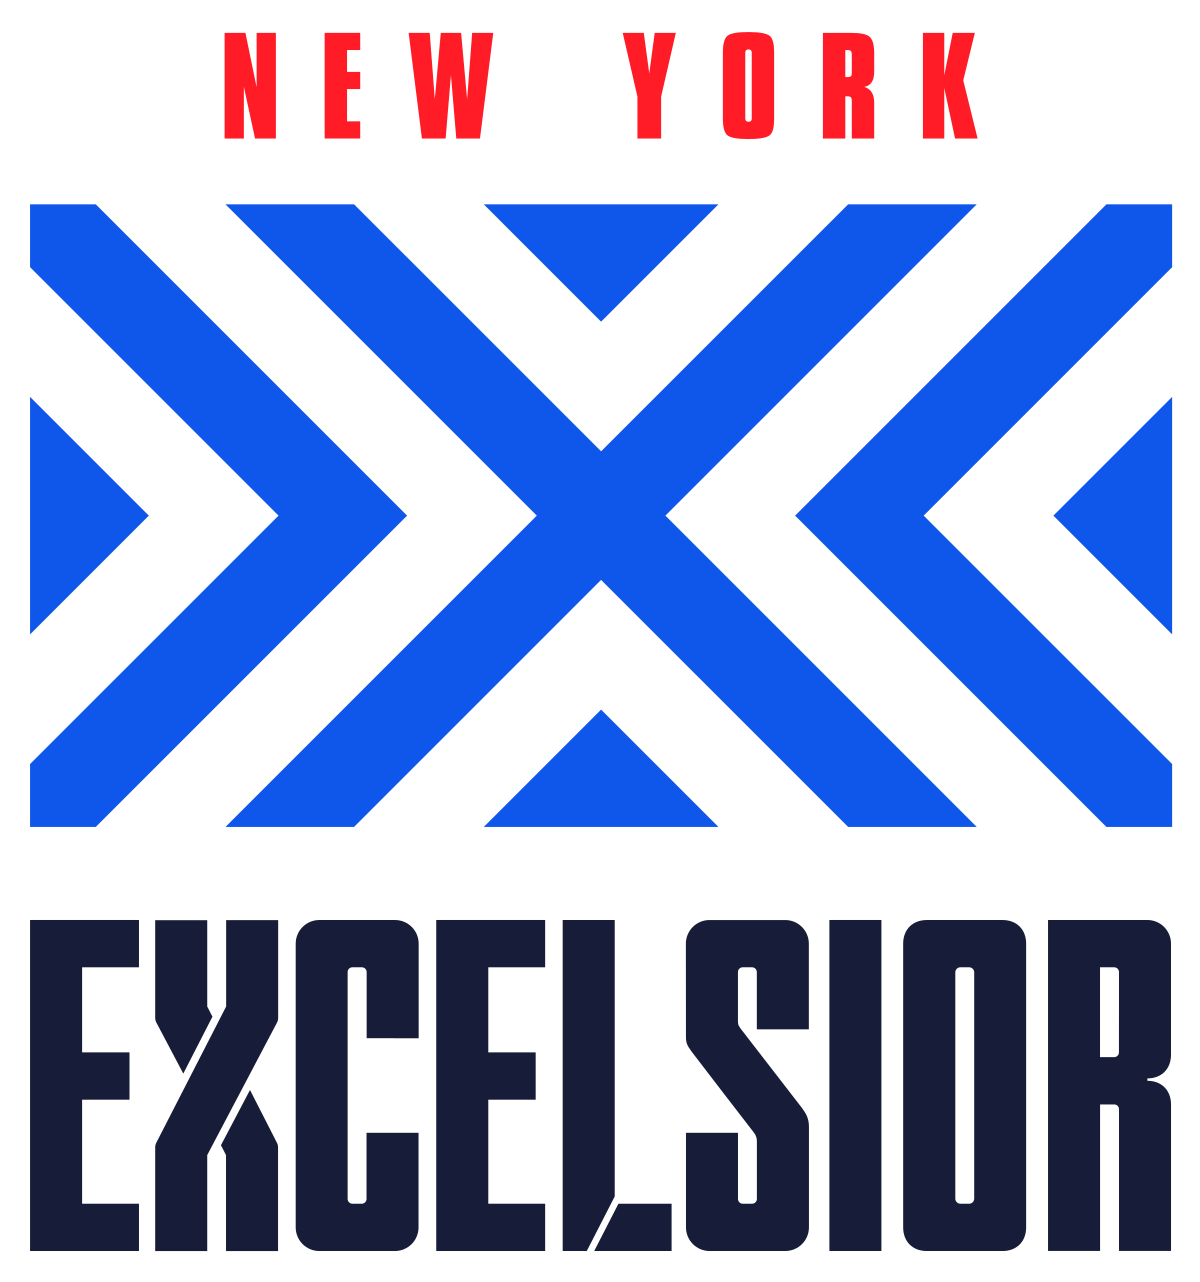 Excelsior Logo - New York Excelsior